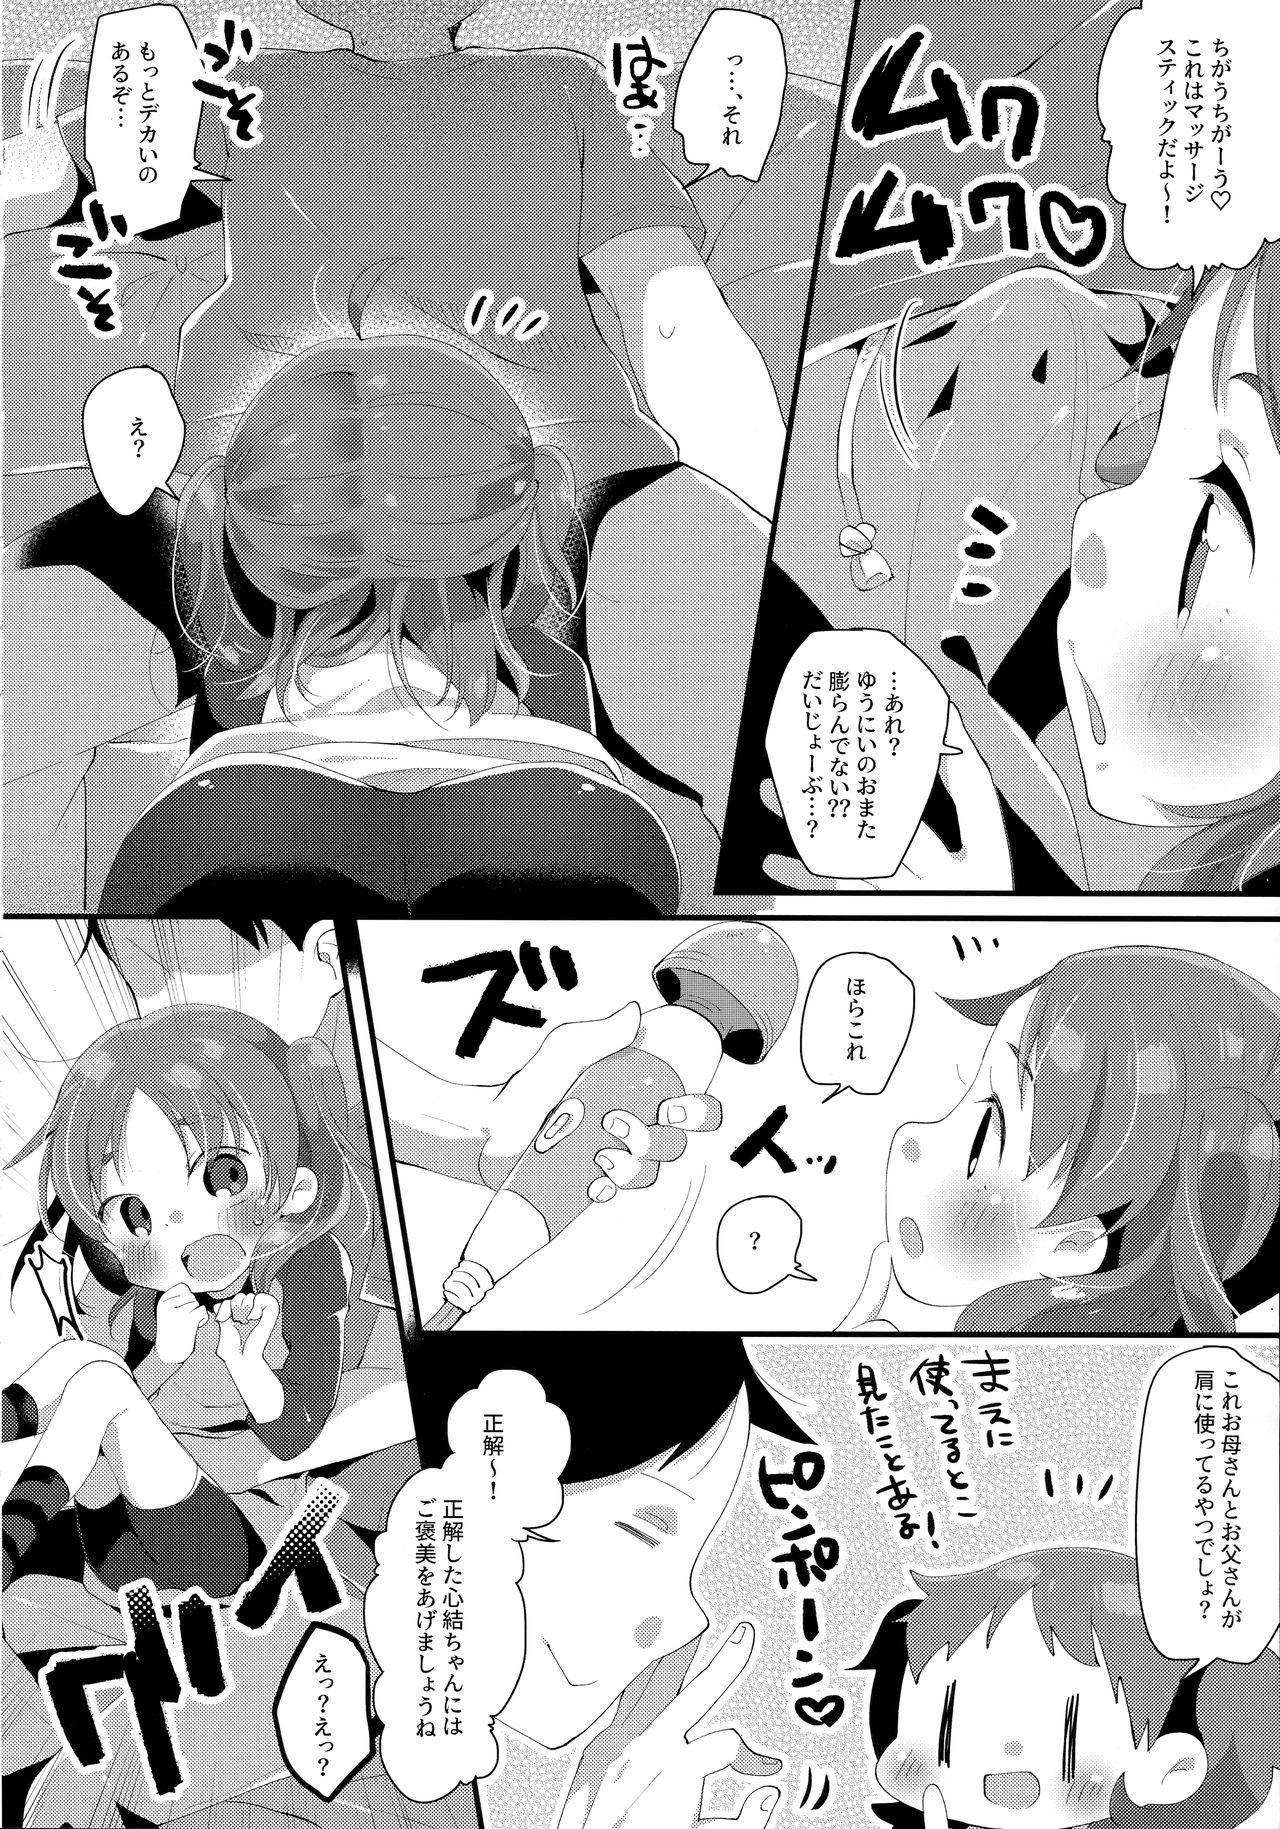 Girlsfucking Kyoudai dakara Daijoubu - Original Pain - Page 7